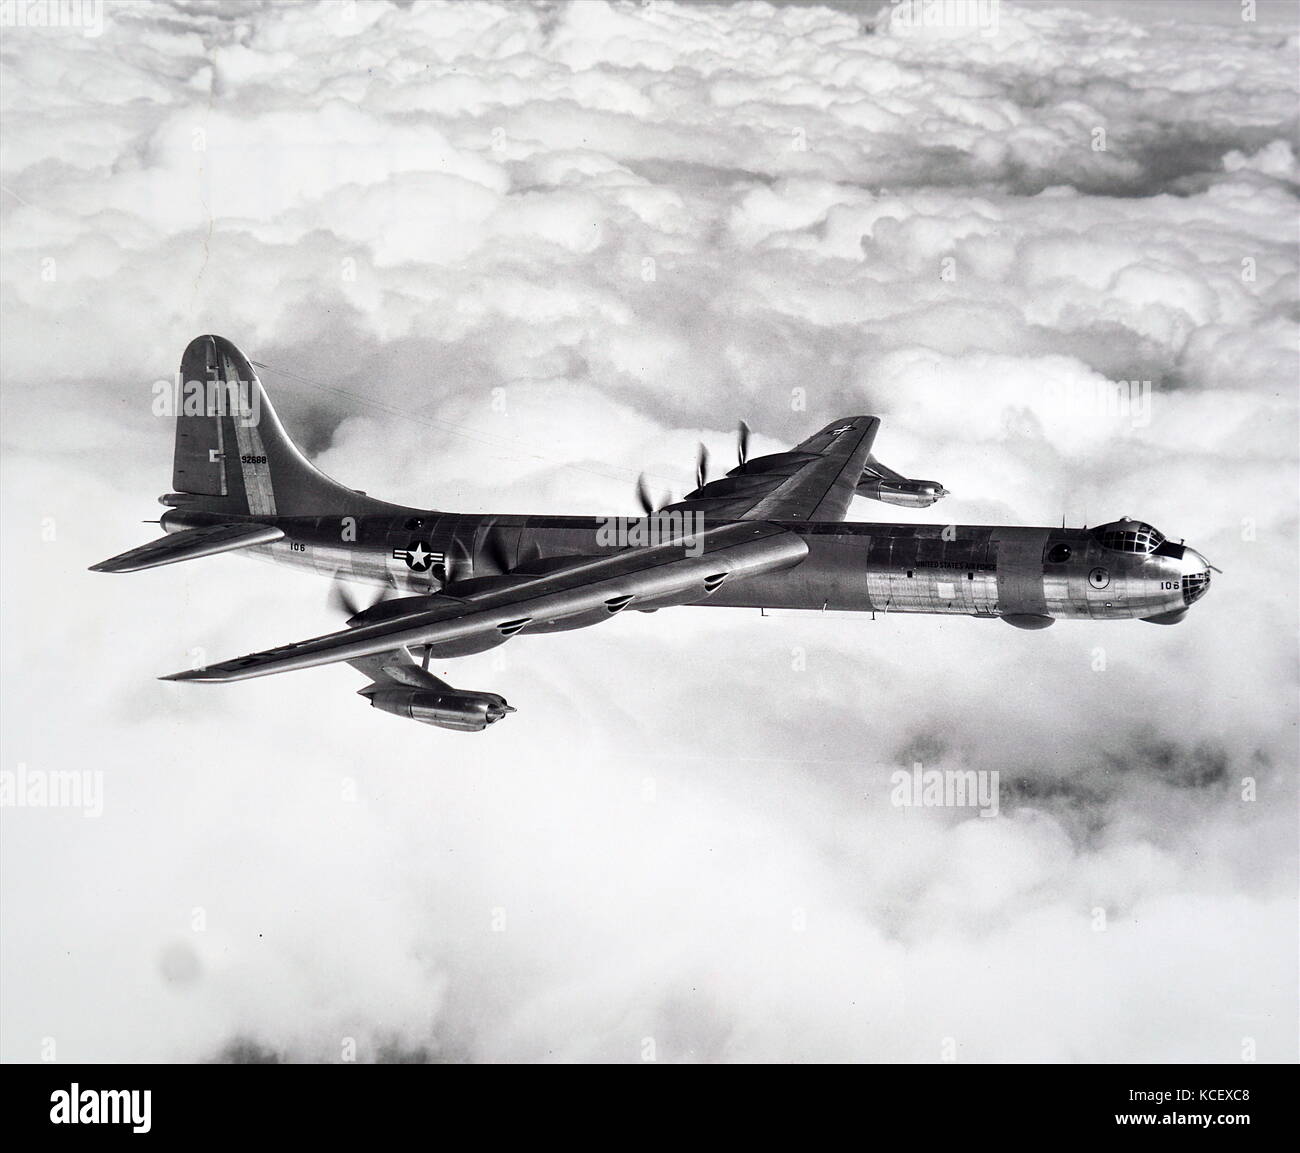 Fotografía de un Convair B-36 Peacemaker. Convair B-36 Peacemaker fue un avión bombardero estratégico construido por Convair para la Fuerza Aérea de los Estados Unidos. Fecha Siglo XX Foto de stock